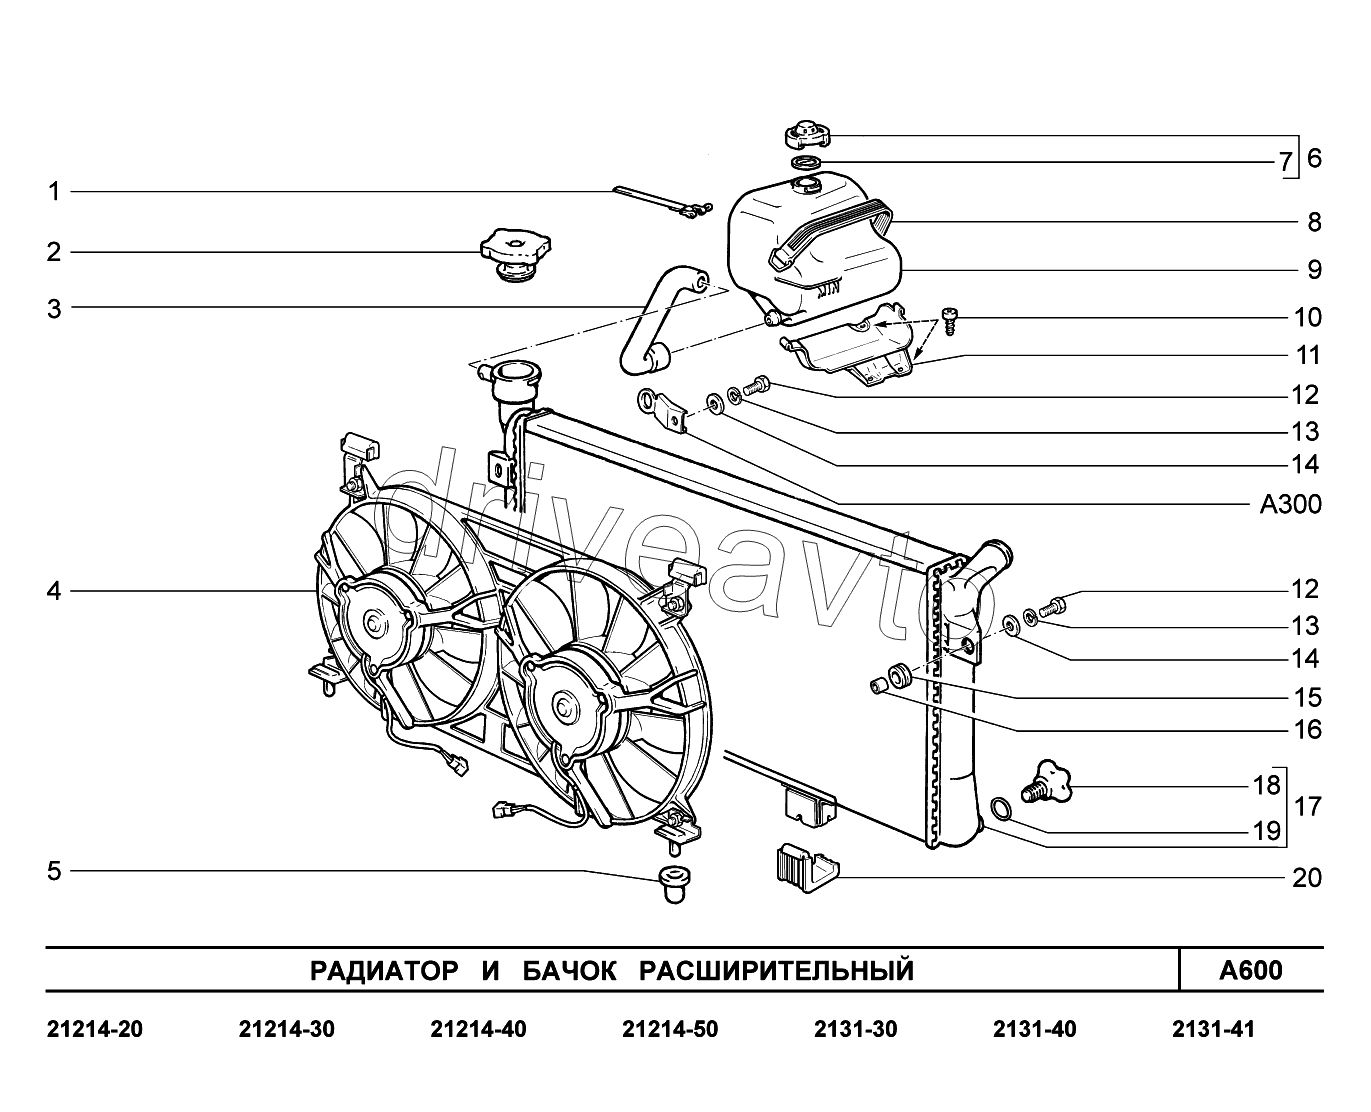 A600. Радиатор и бачок расширительный